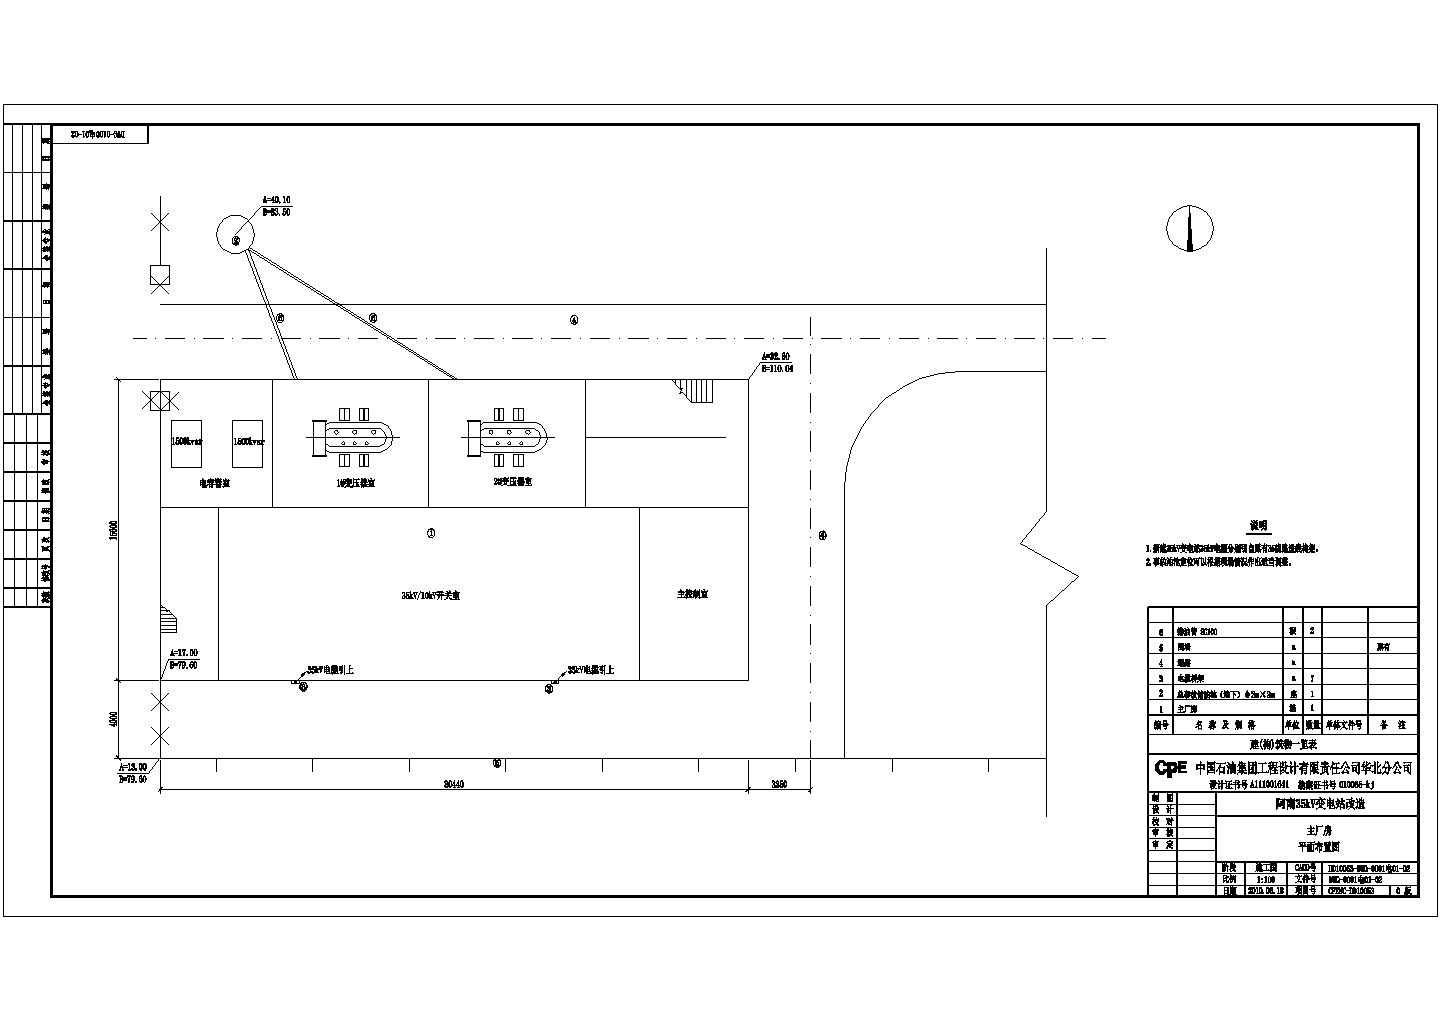 阿南35kV变电站改造工程主厂房电气设计施工图